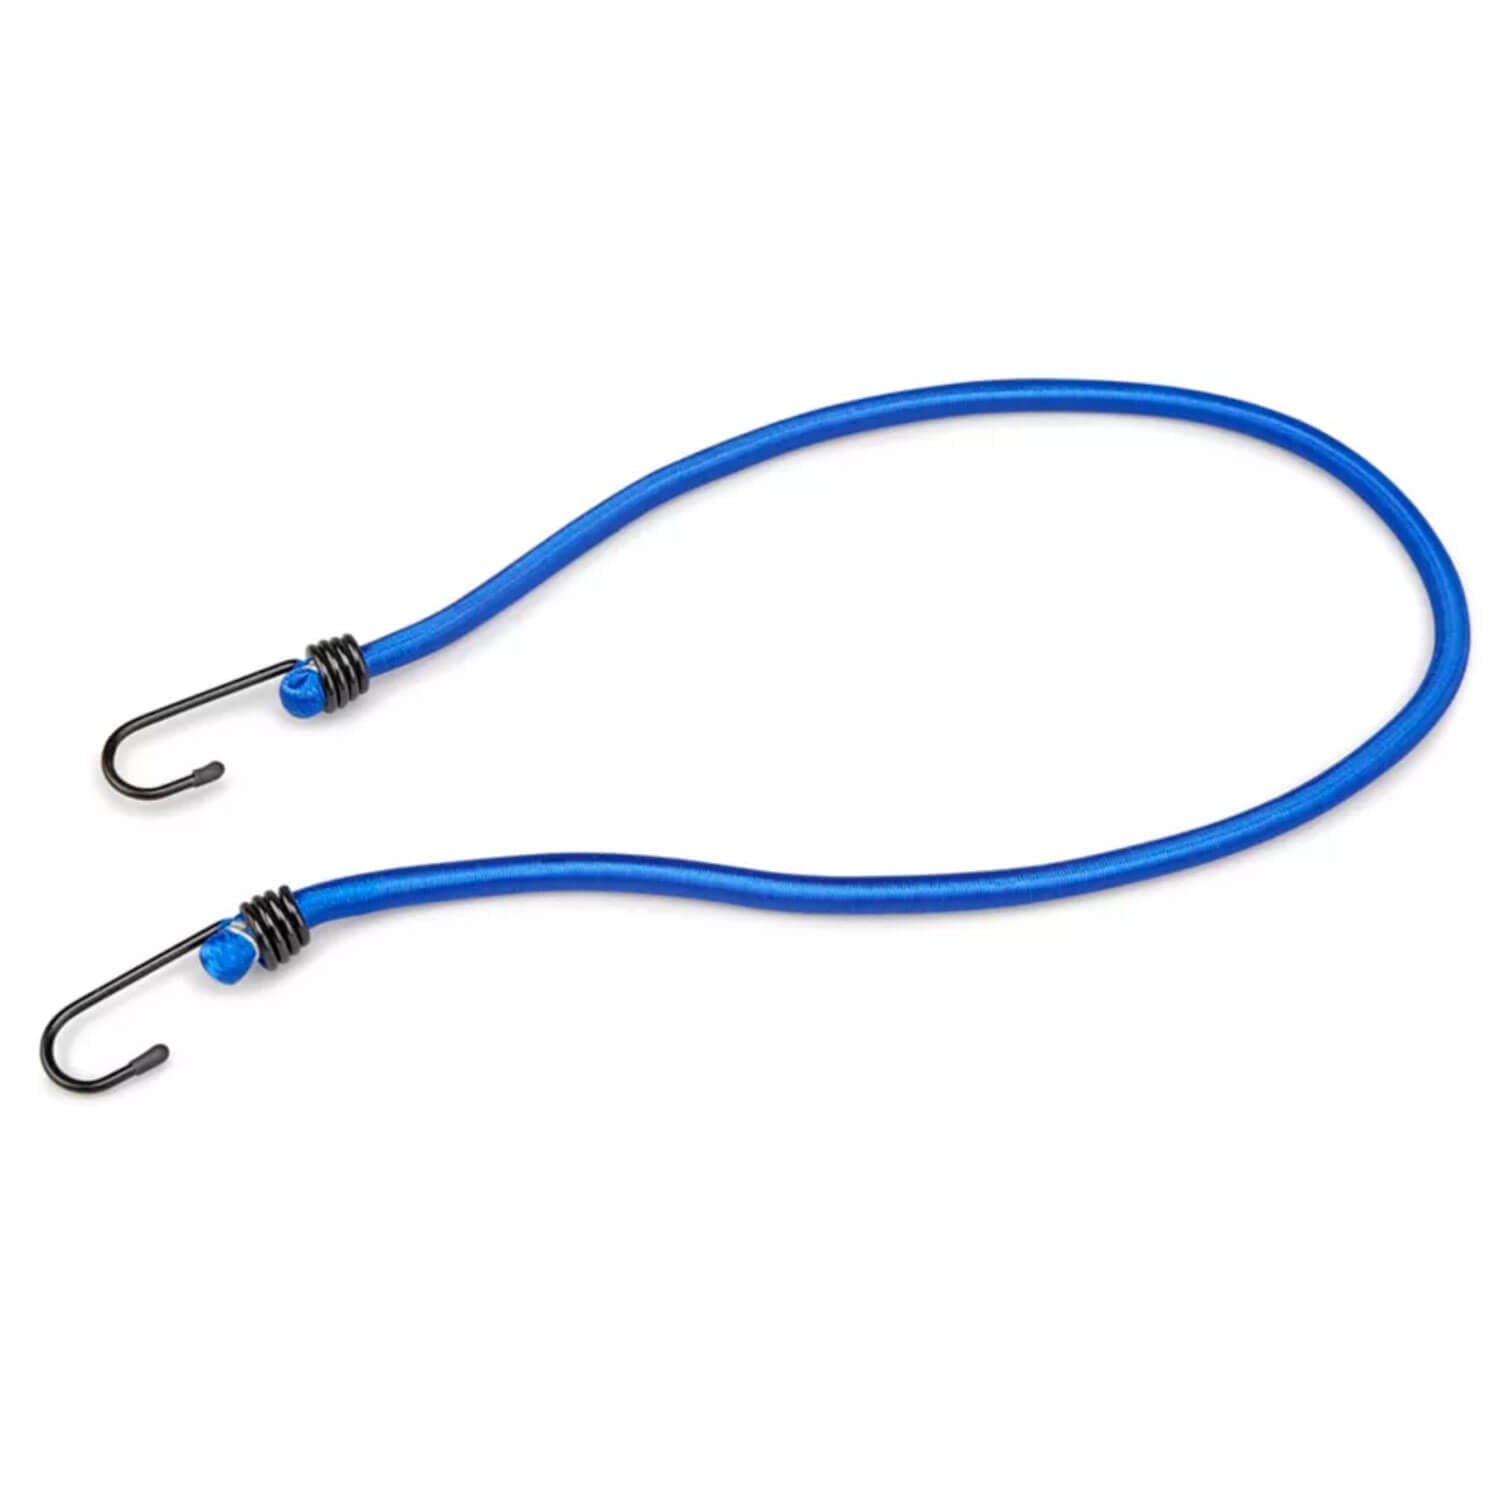 http://bluetarps.com/cdn/shop/products/36-inch-blue-bungee-cord_1.jpg?v=1660062034